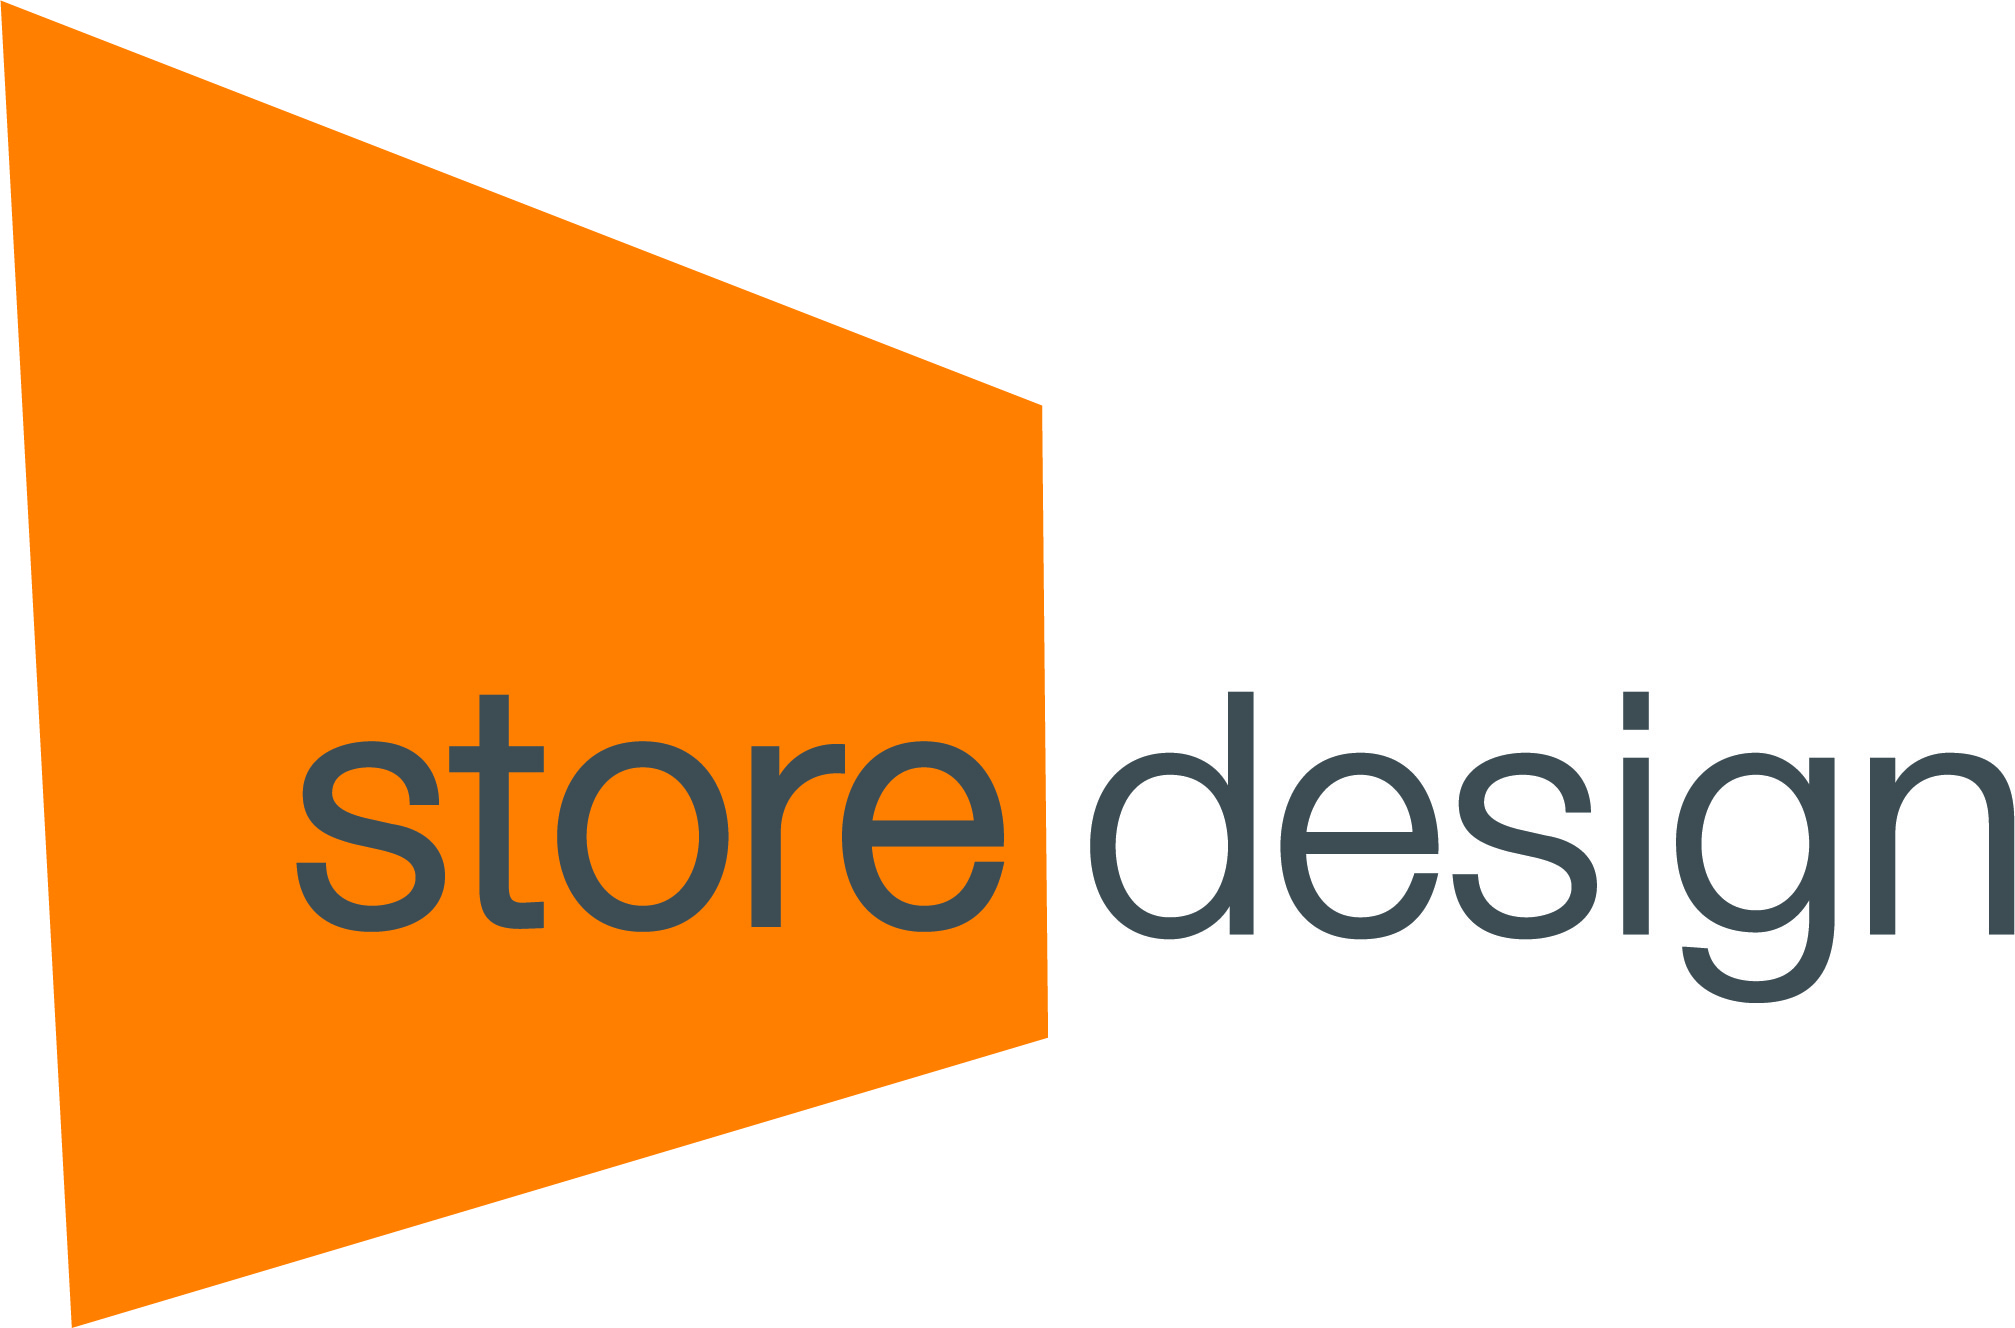 Store Design Shopfitting Ltd